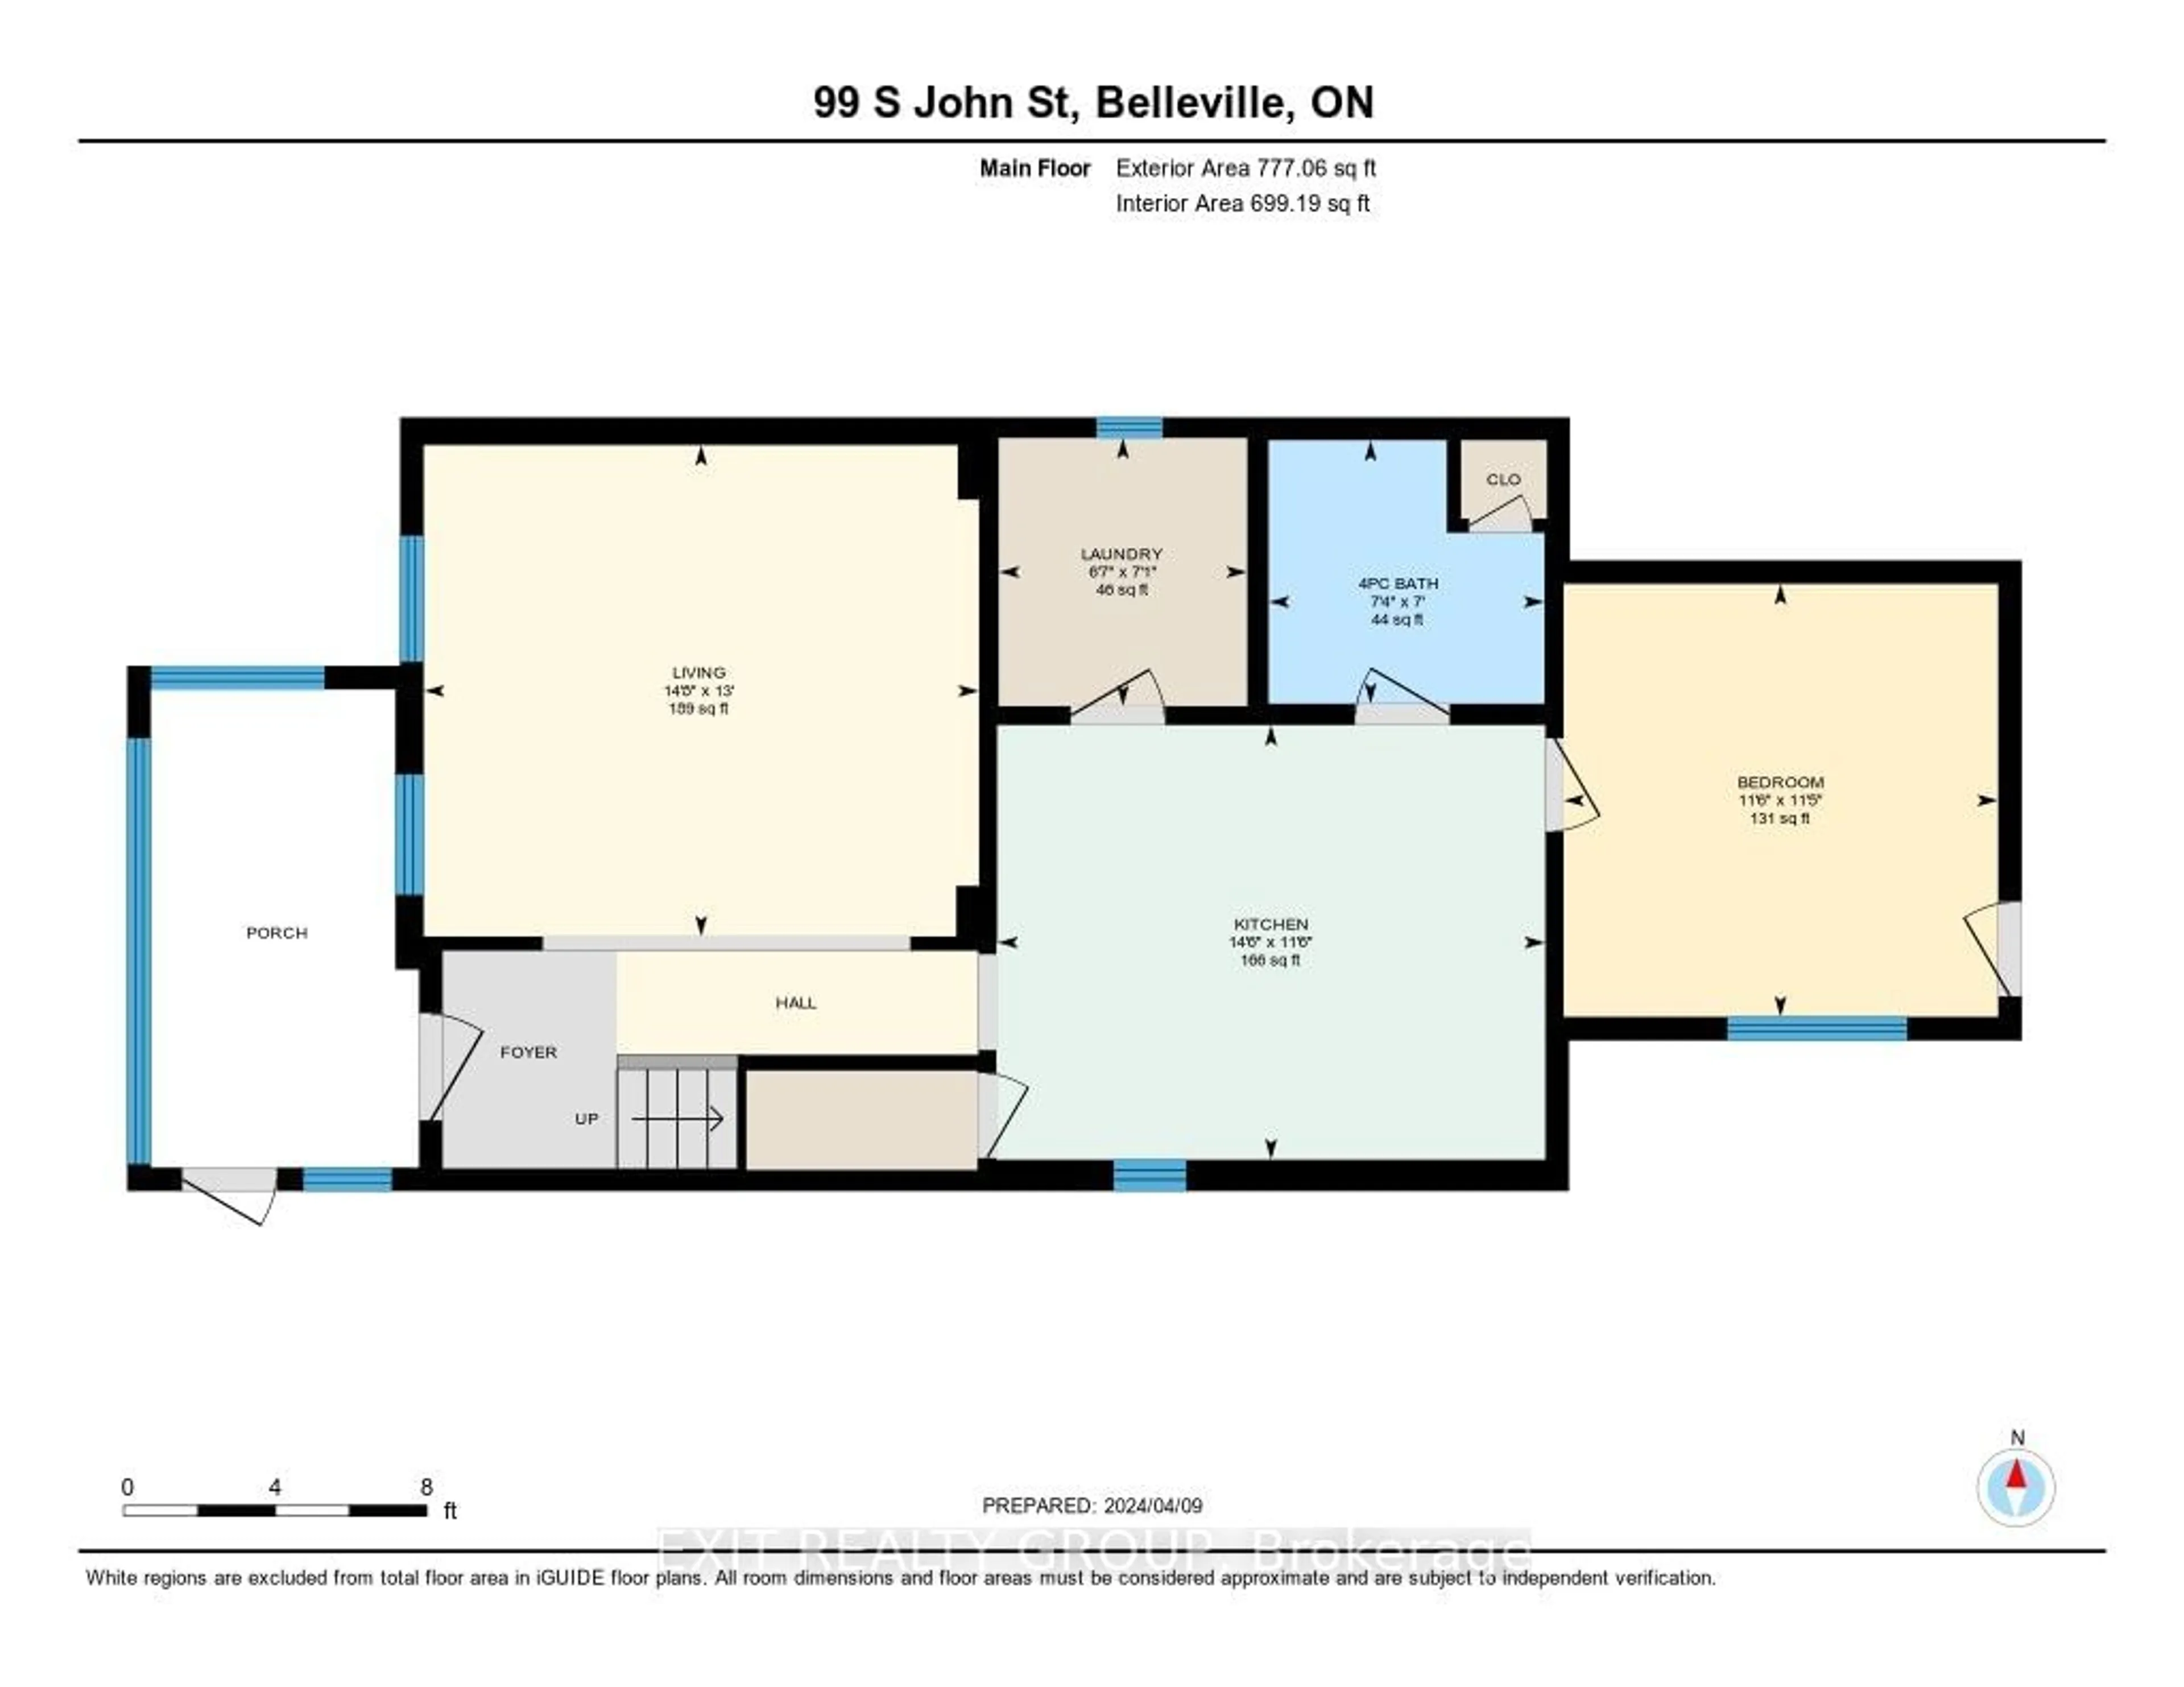 Floor plan for 99 South John St, Belleville Ontario K8N 3E5